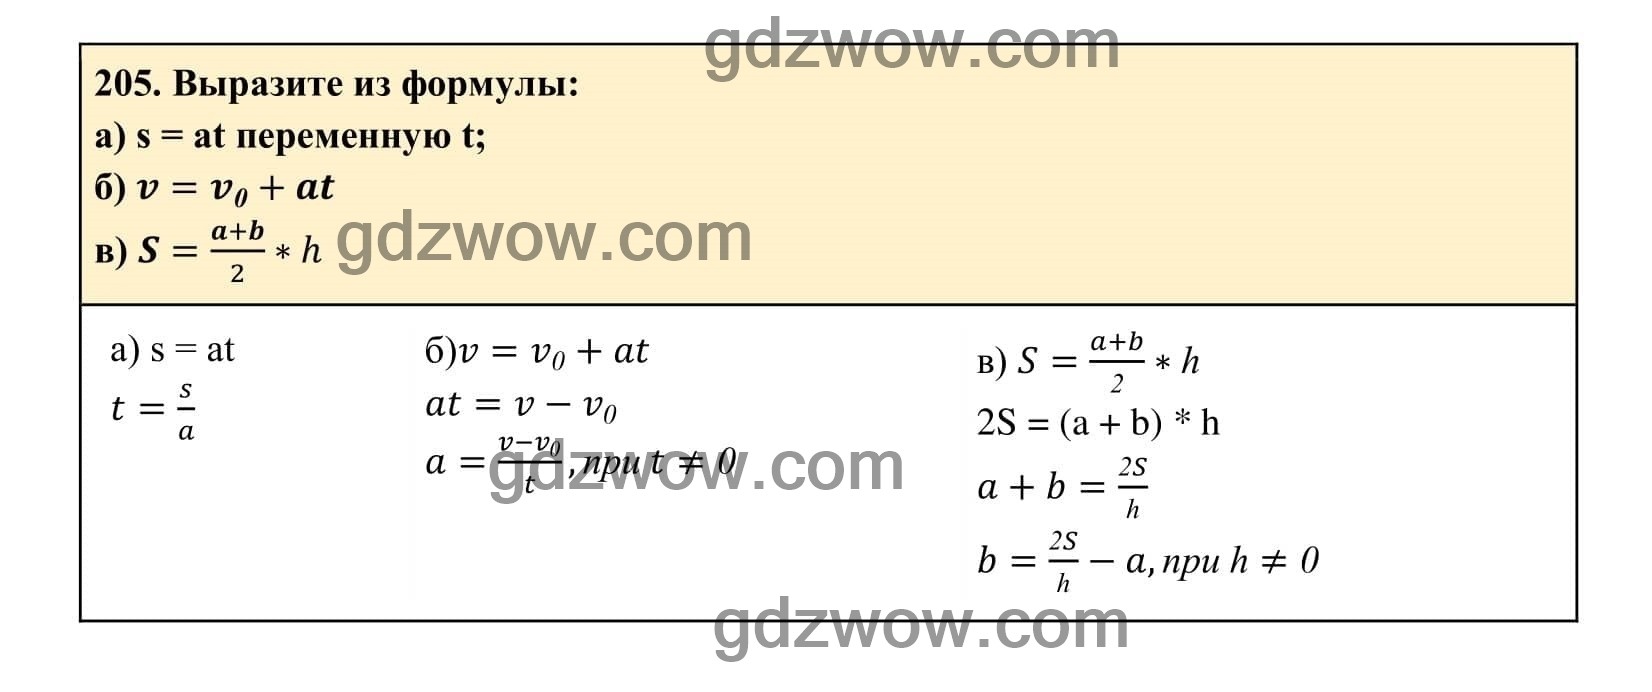 Упражнение 205 - ГДЗ по Алгебре 7 класс Учебник Макарычев (решебник) - GDZwow